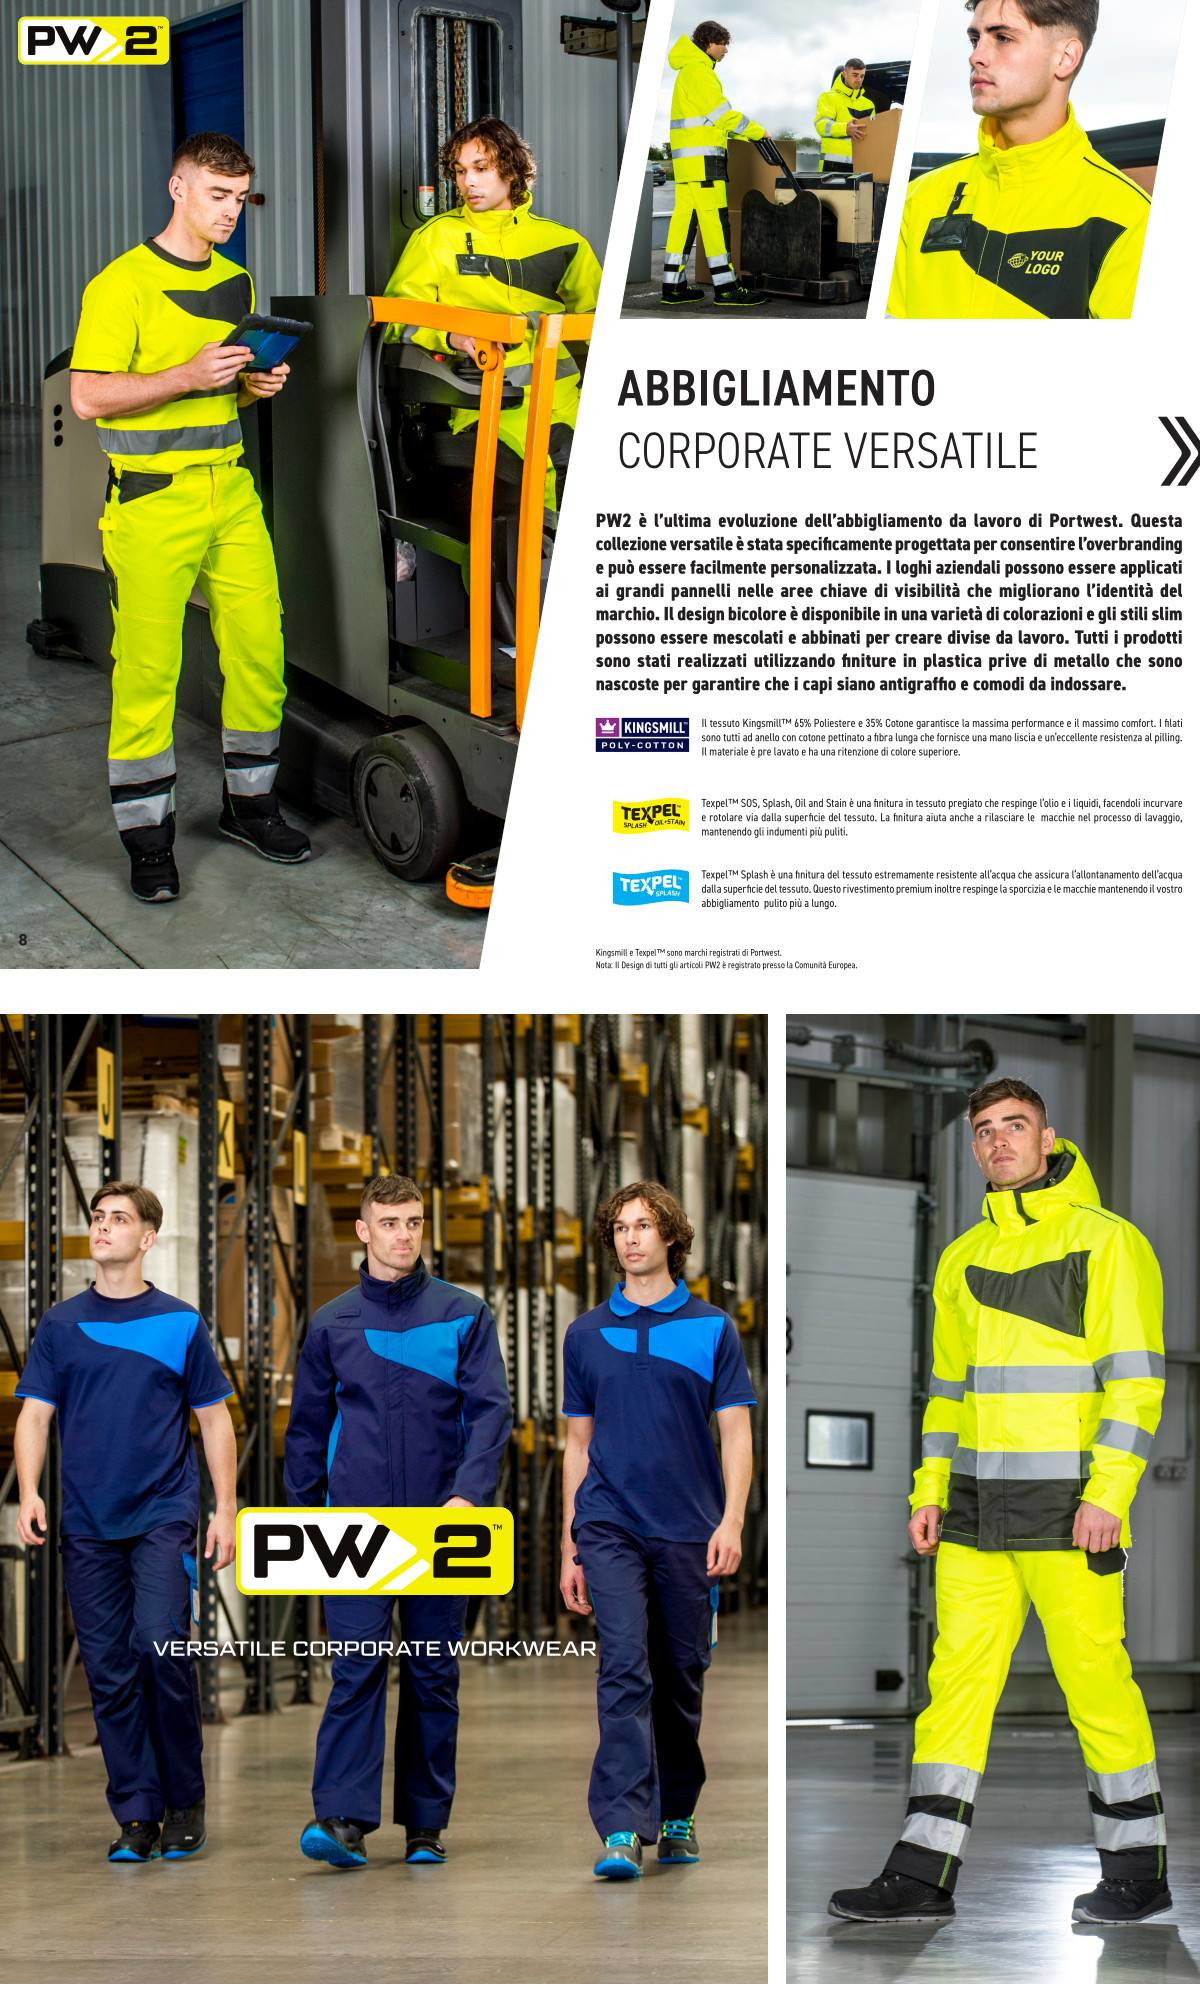 Portwest PW2 - Divise da Lavoro Aziendali e Abbigliamento Corporate